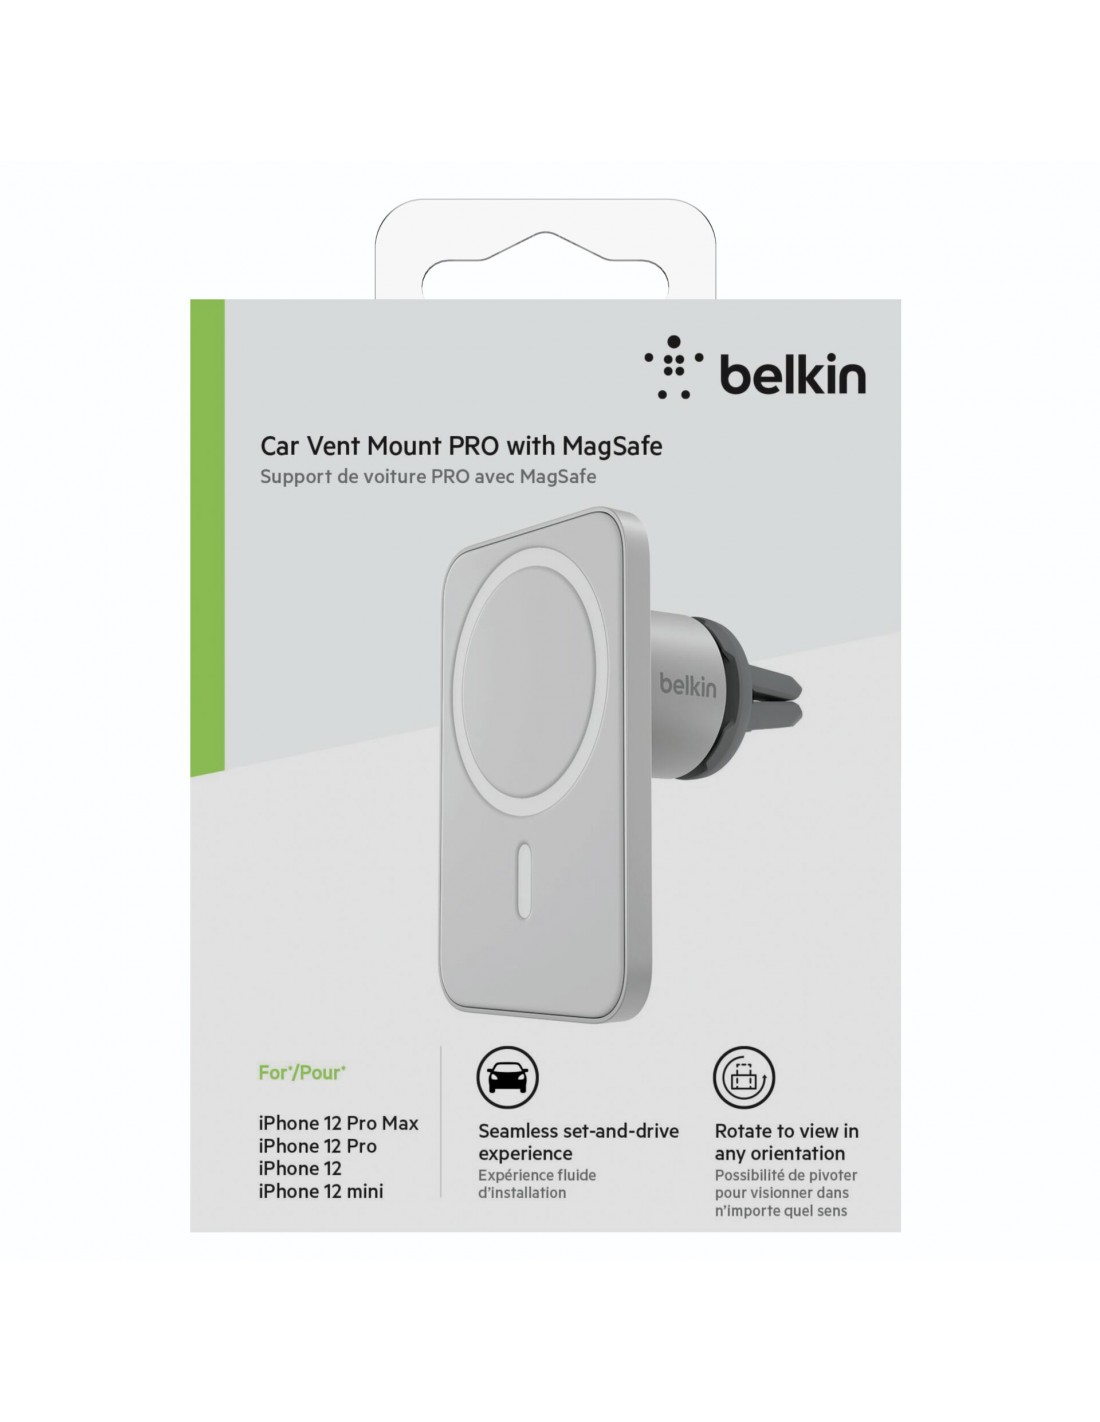 Aperçu du support PRO compatible MagSafe de Belkin pour voiture 🆕